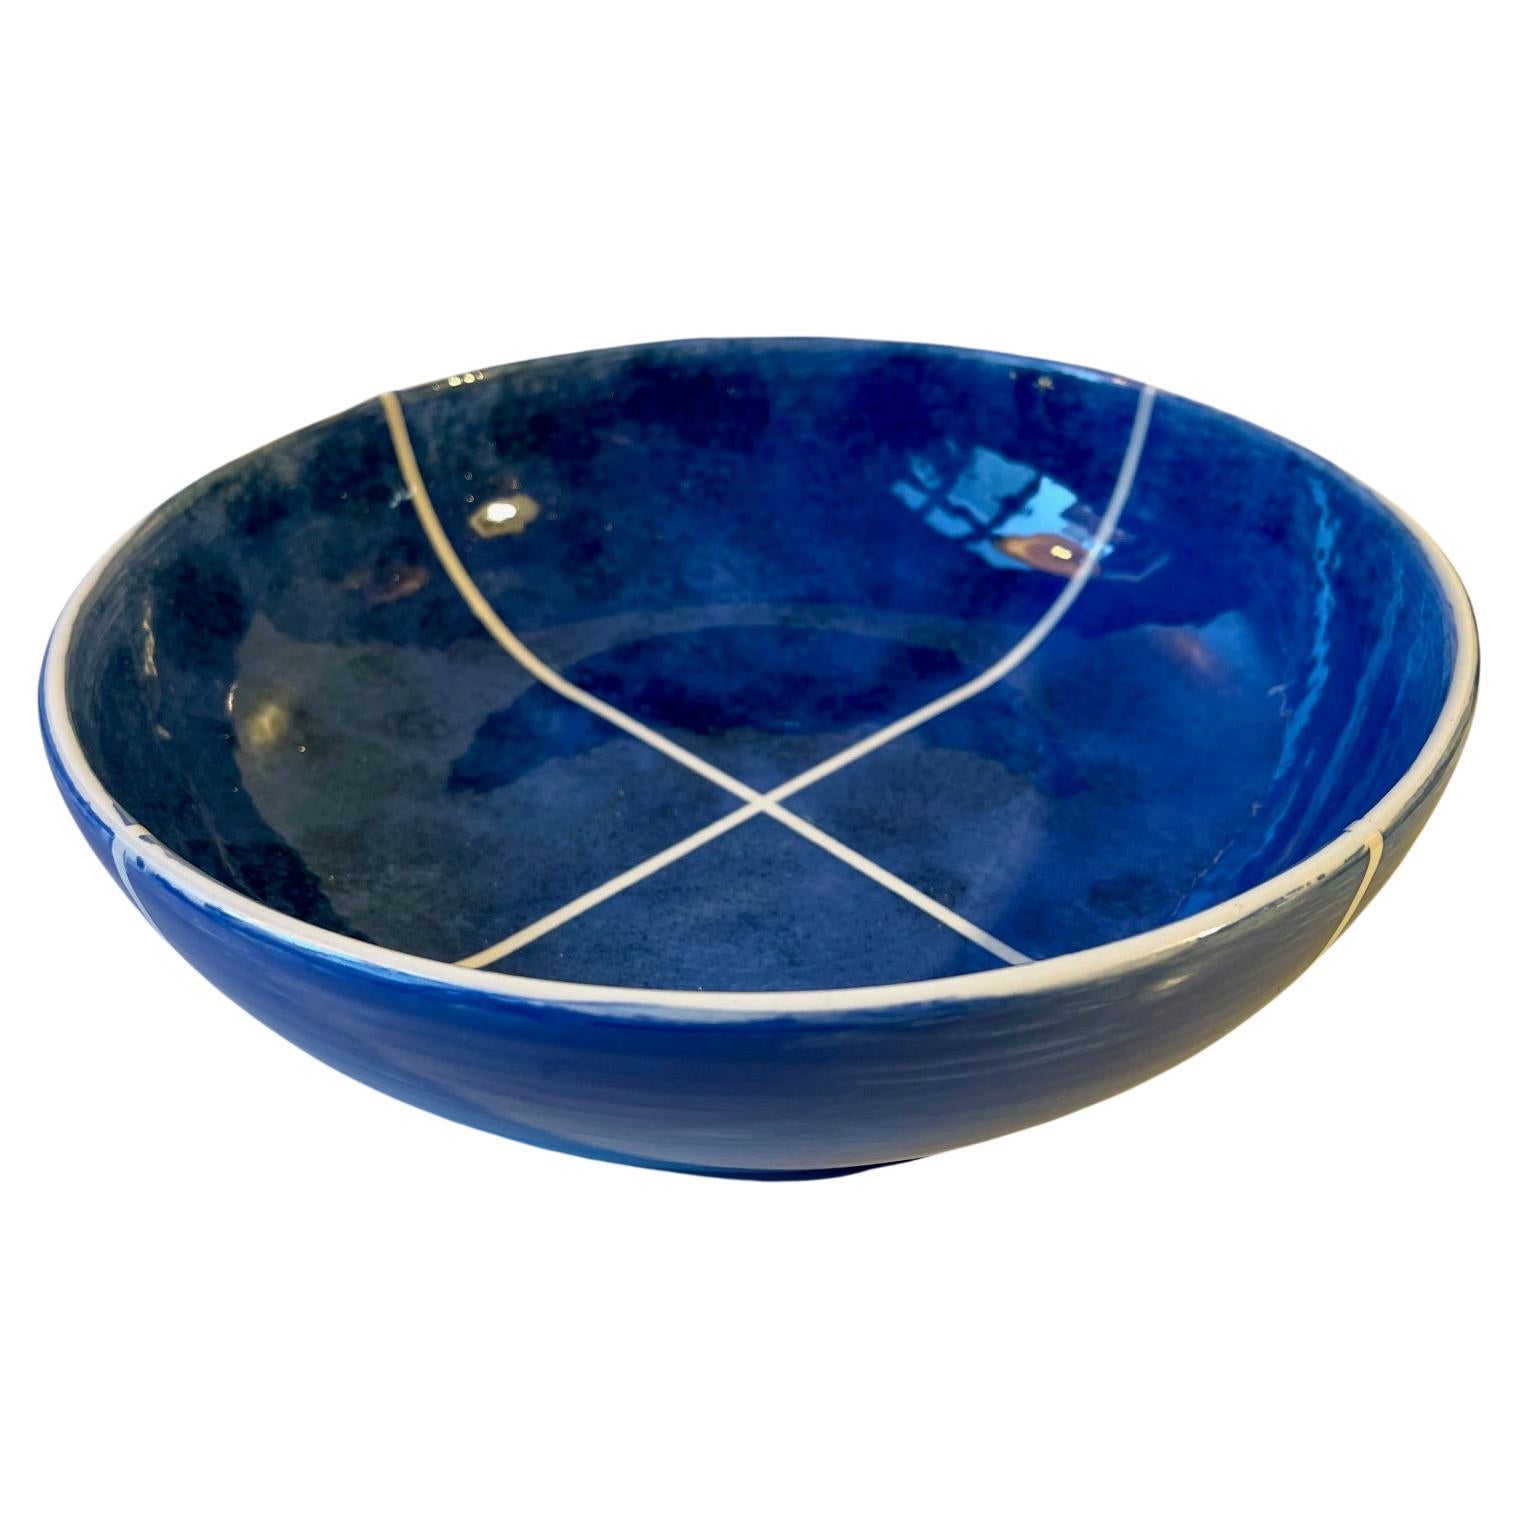 Vintage Danish Ceramic Bowl with Blue Glaze, Signed, 1970s For Sale